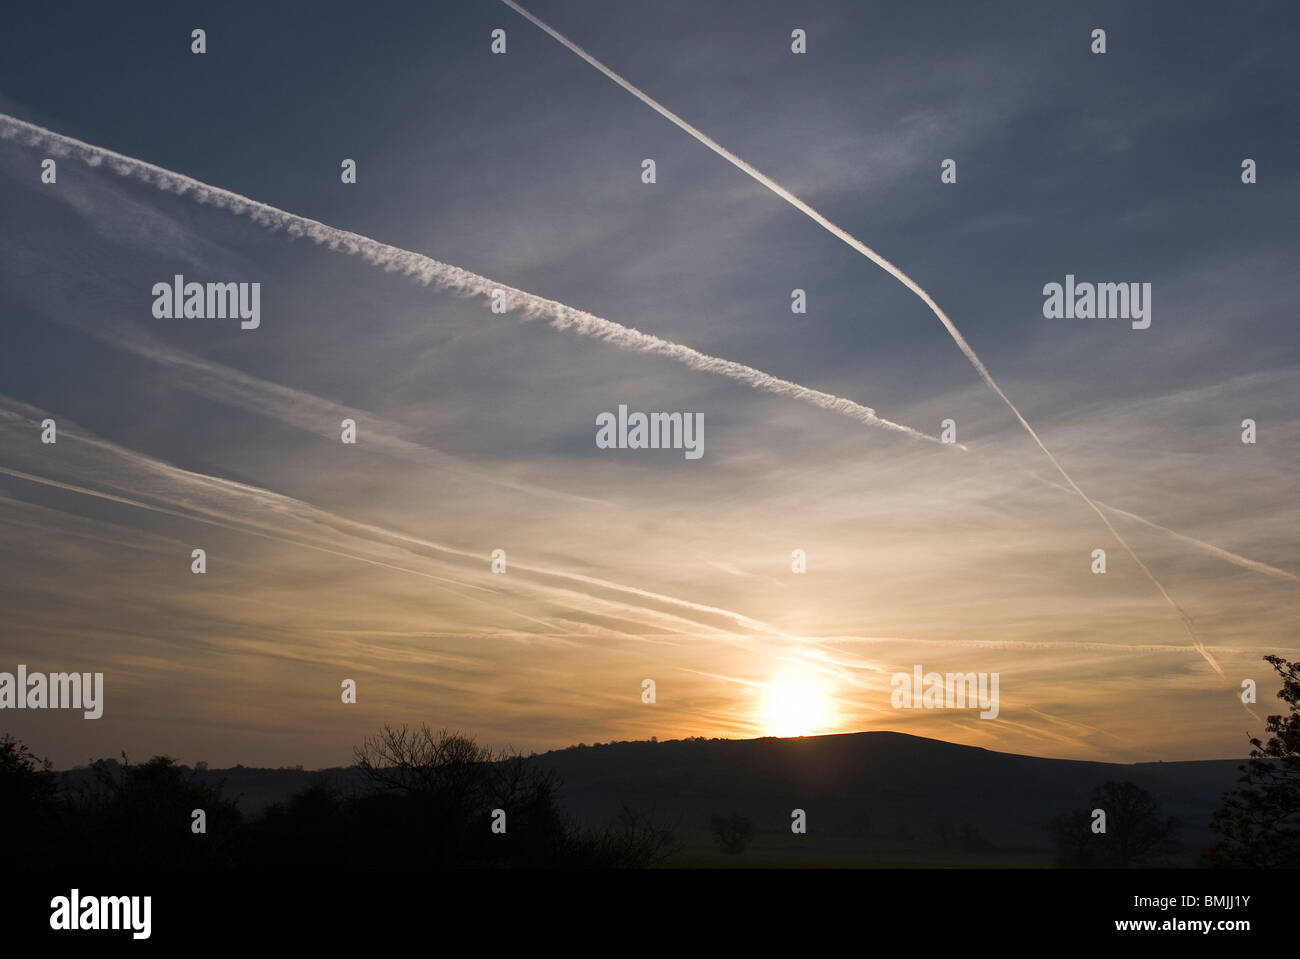 Las estelas de condensación de los aviones en el cielo del amanecer son vistos a través de ventanas de doble acristalamiento Foto de stock